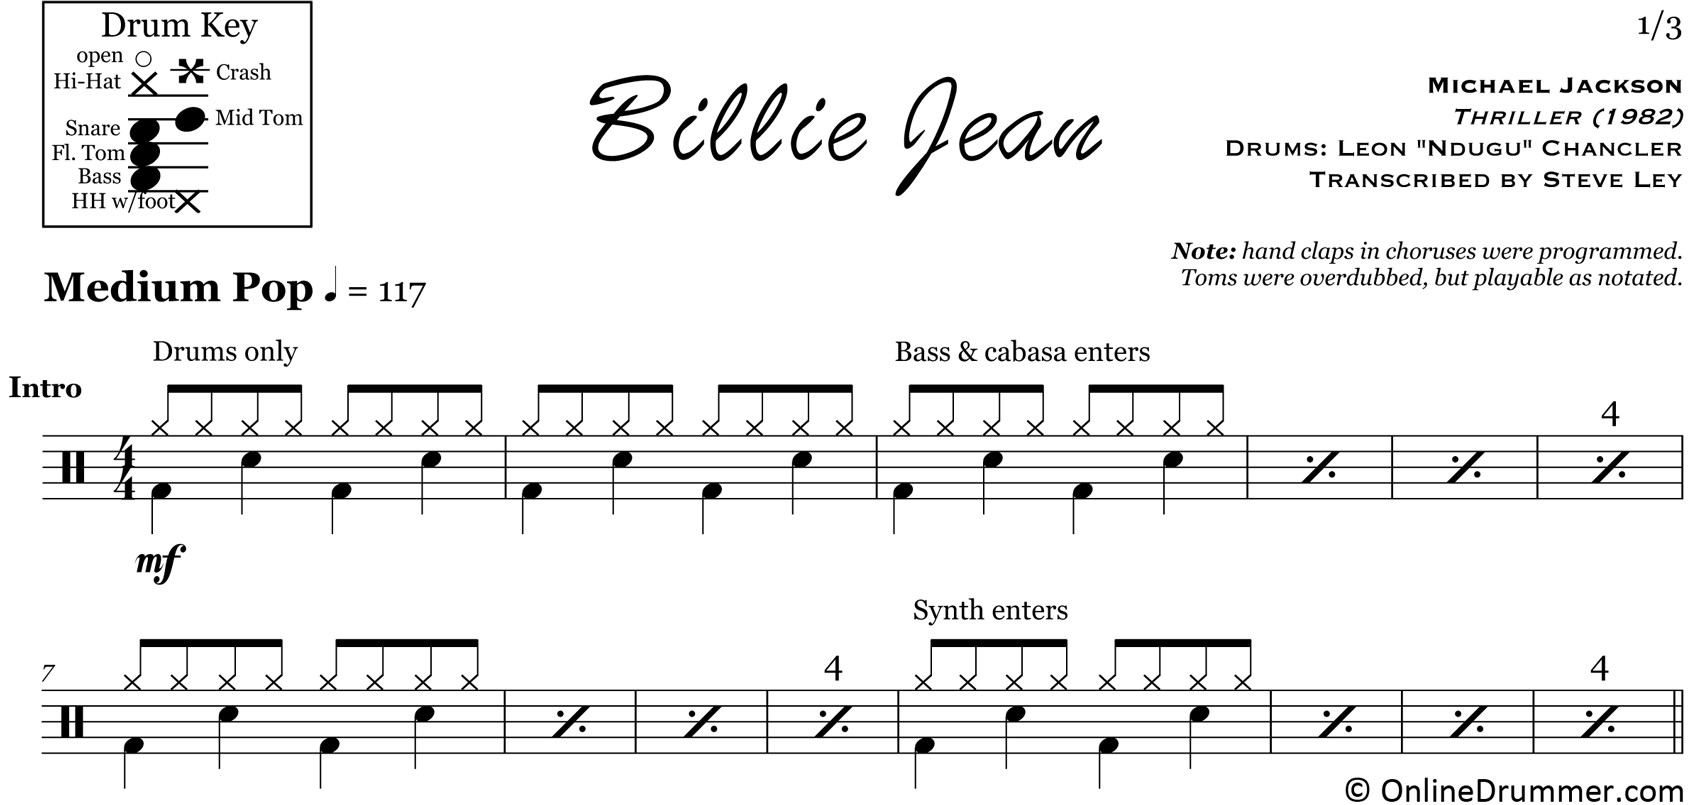 Billie Jean- 3 Piece Set